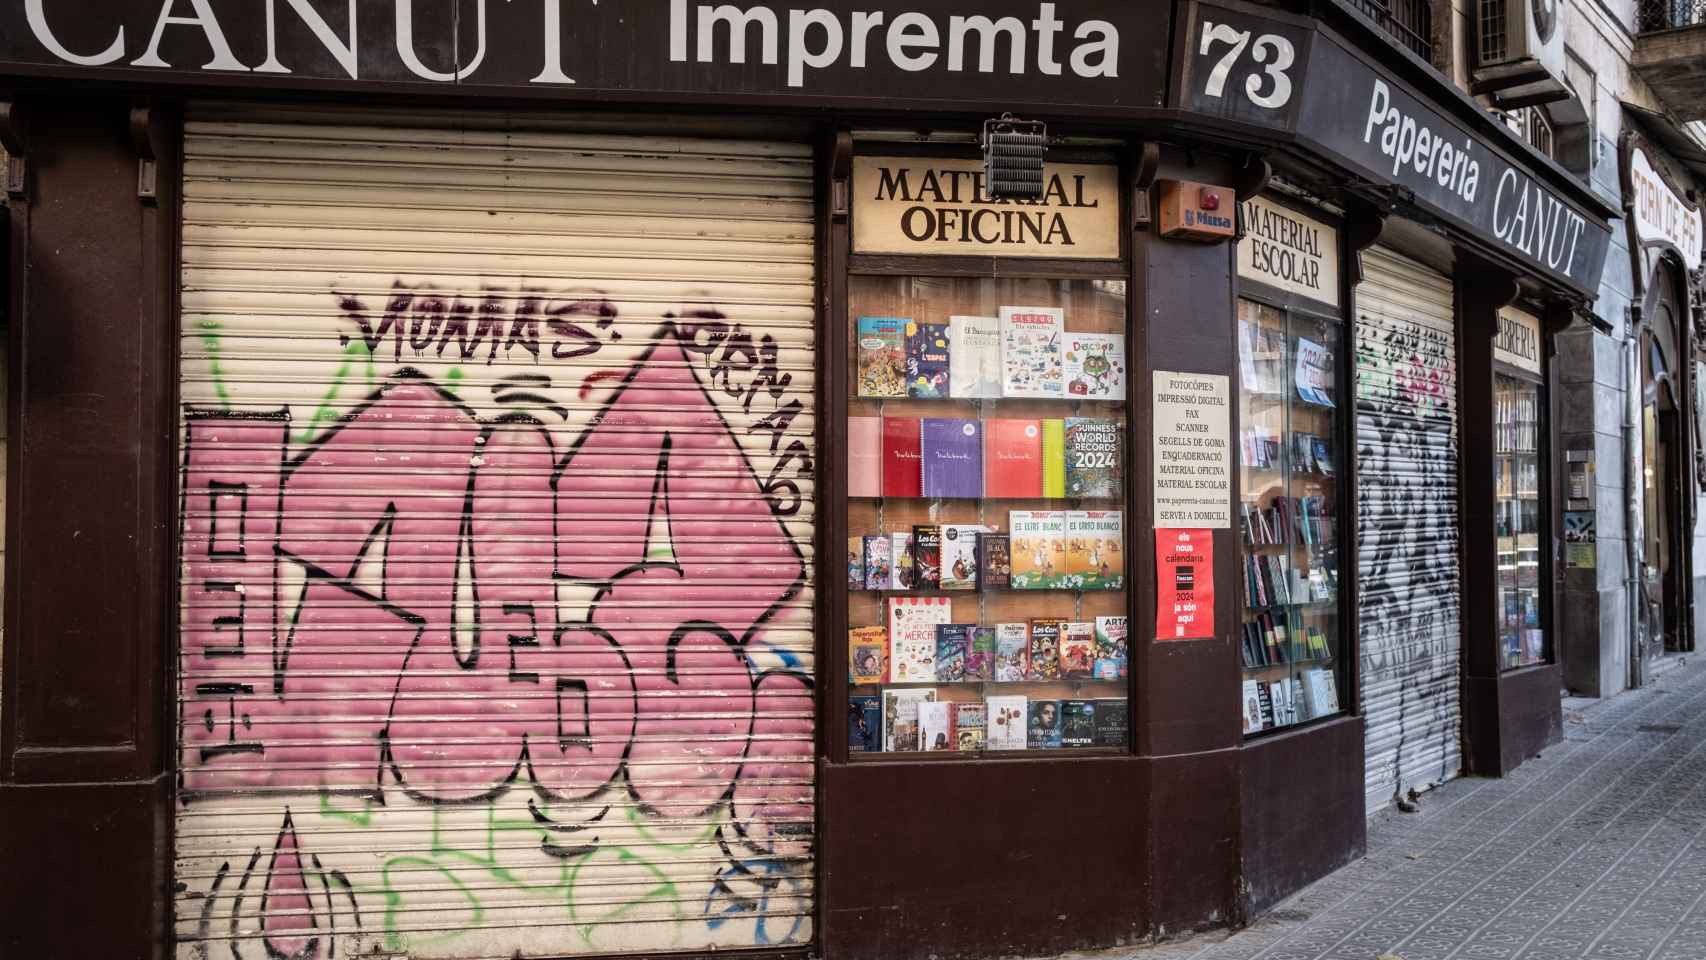 Persiana grafiteada de la Papereria Canut, en la Dreta del Eixample de Barcelona